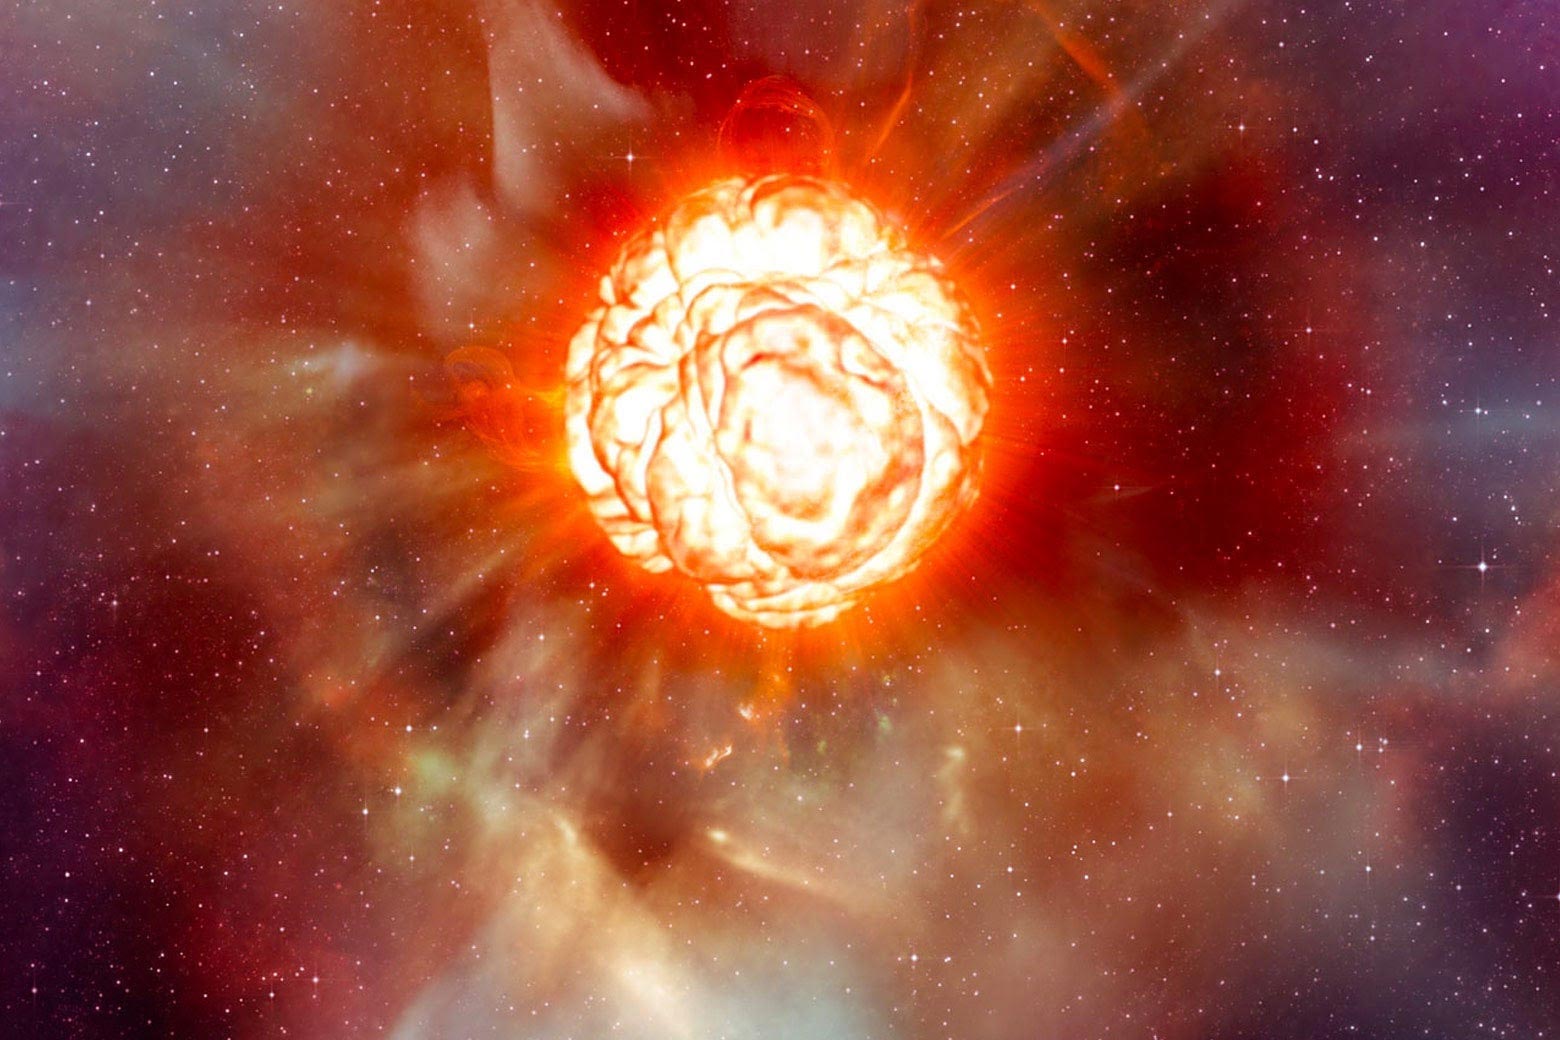 Le stelle massicce avvertono che stanno per raggiungere una supernova